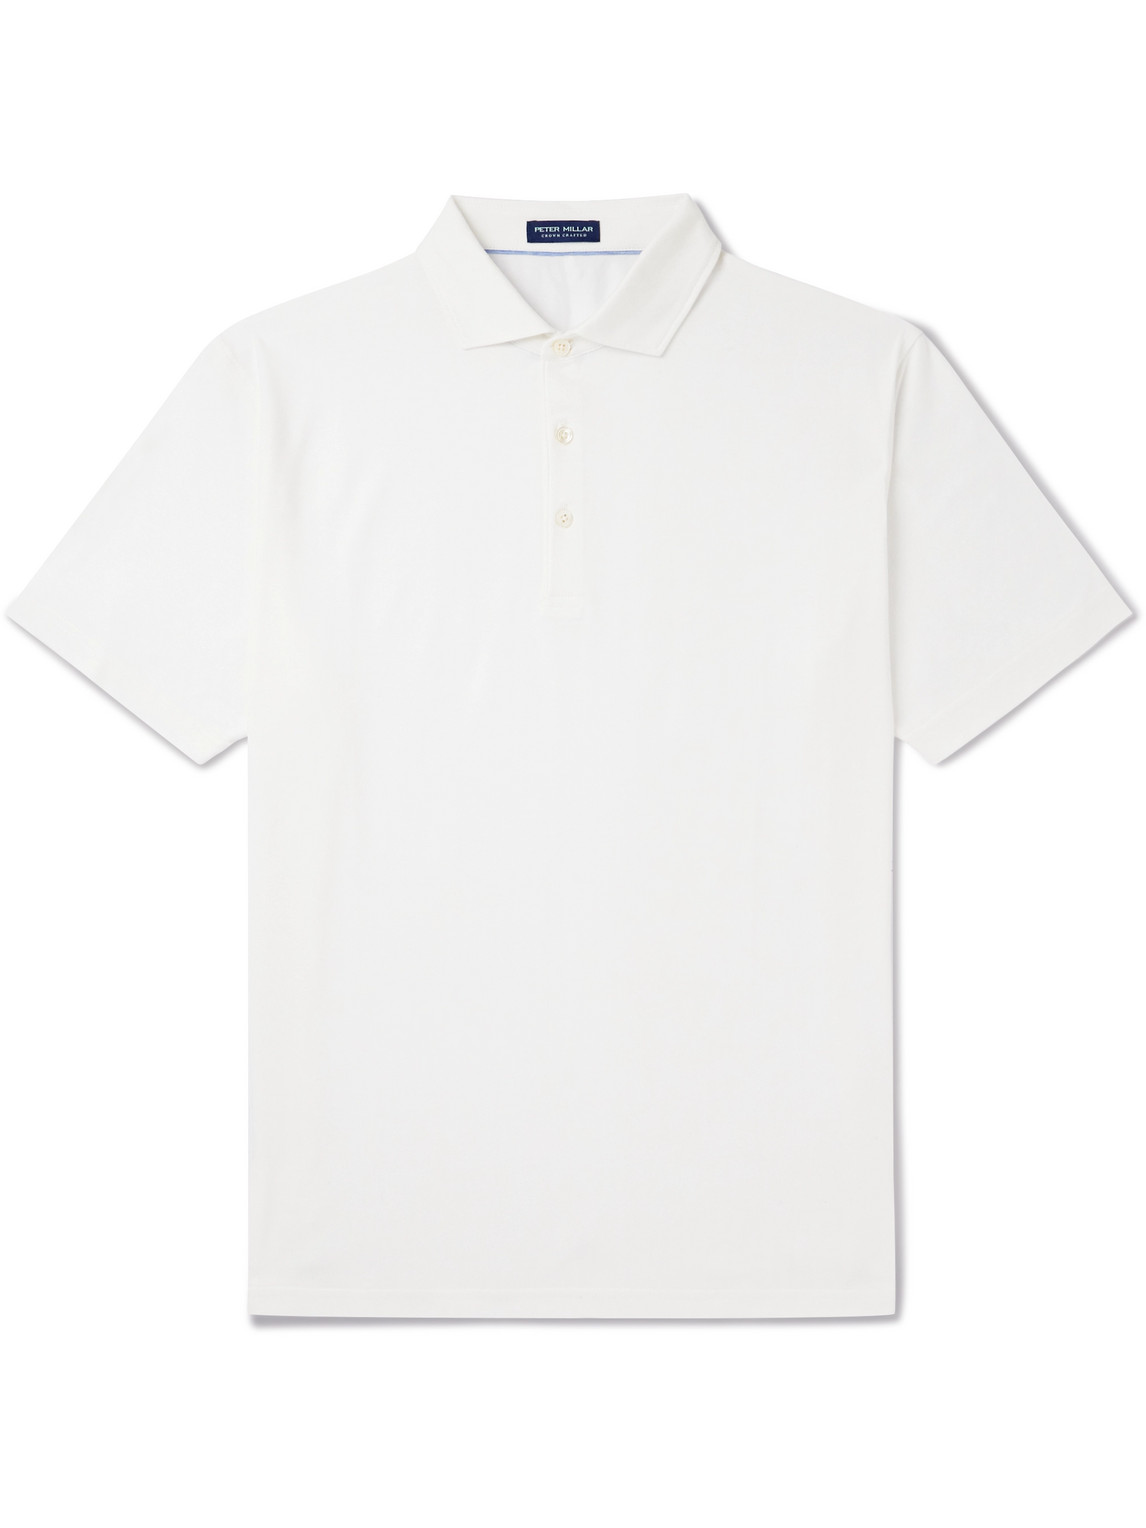 Excursionist Flex Cotton-Blend Polo Shirt